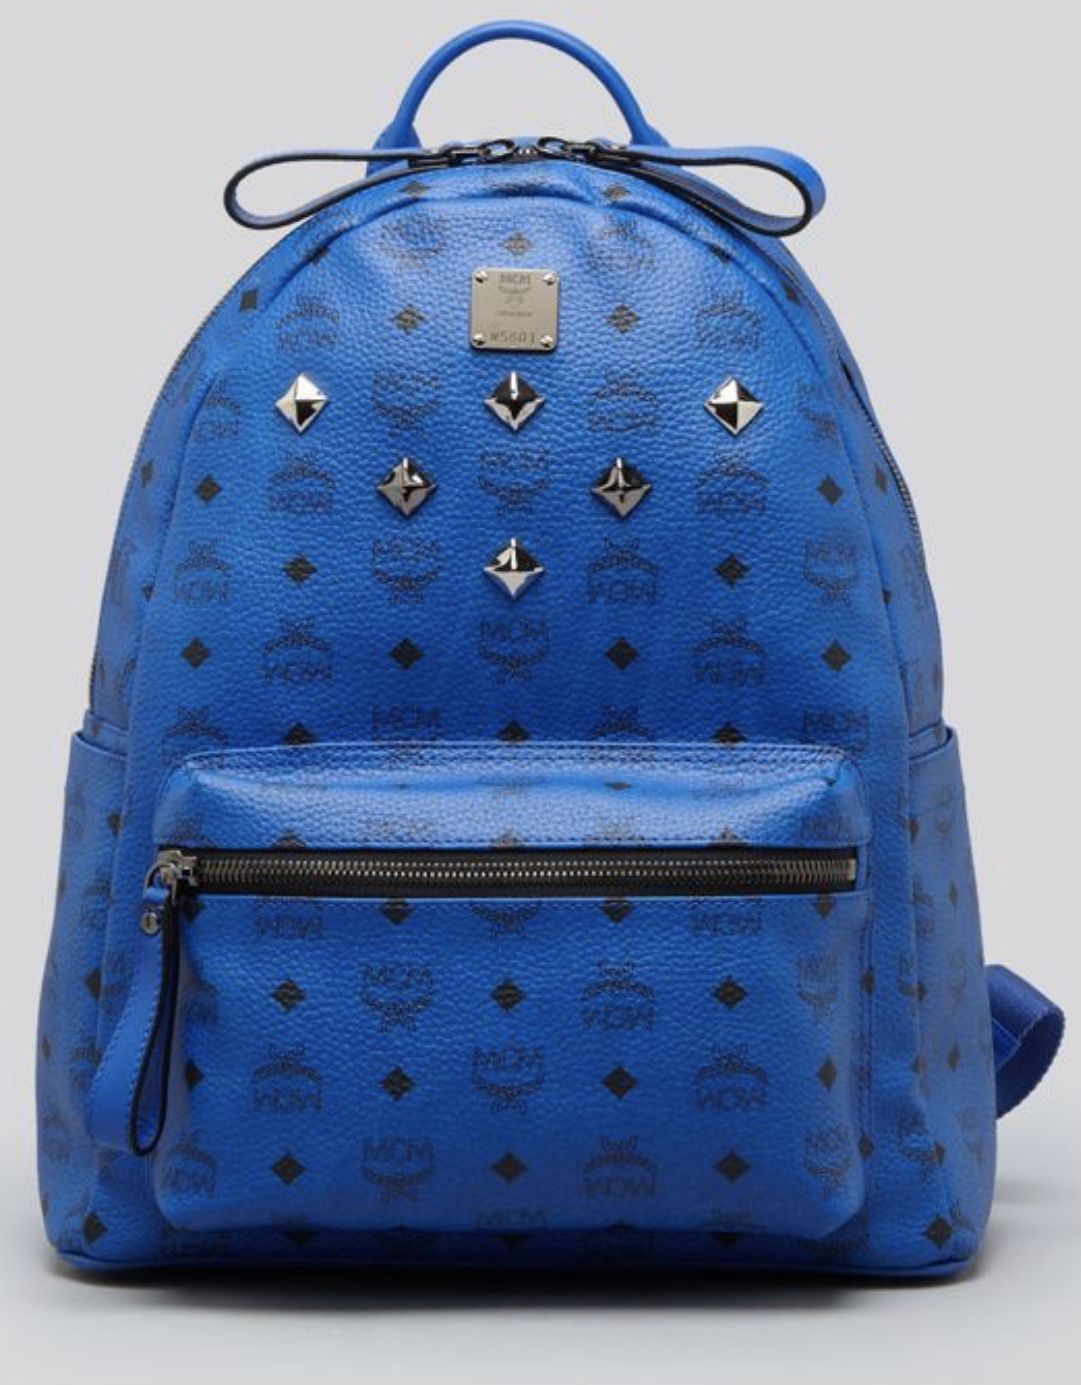 Blue McM backpack